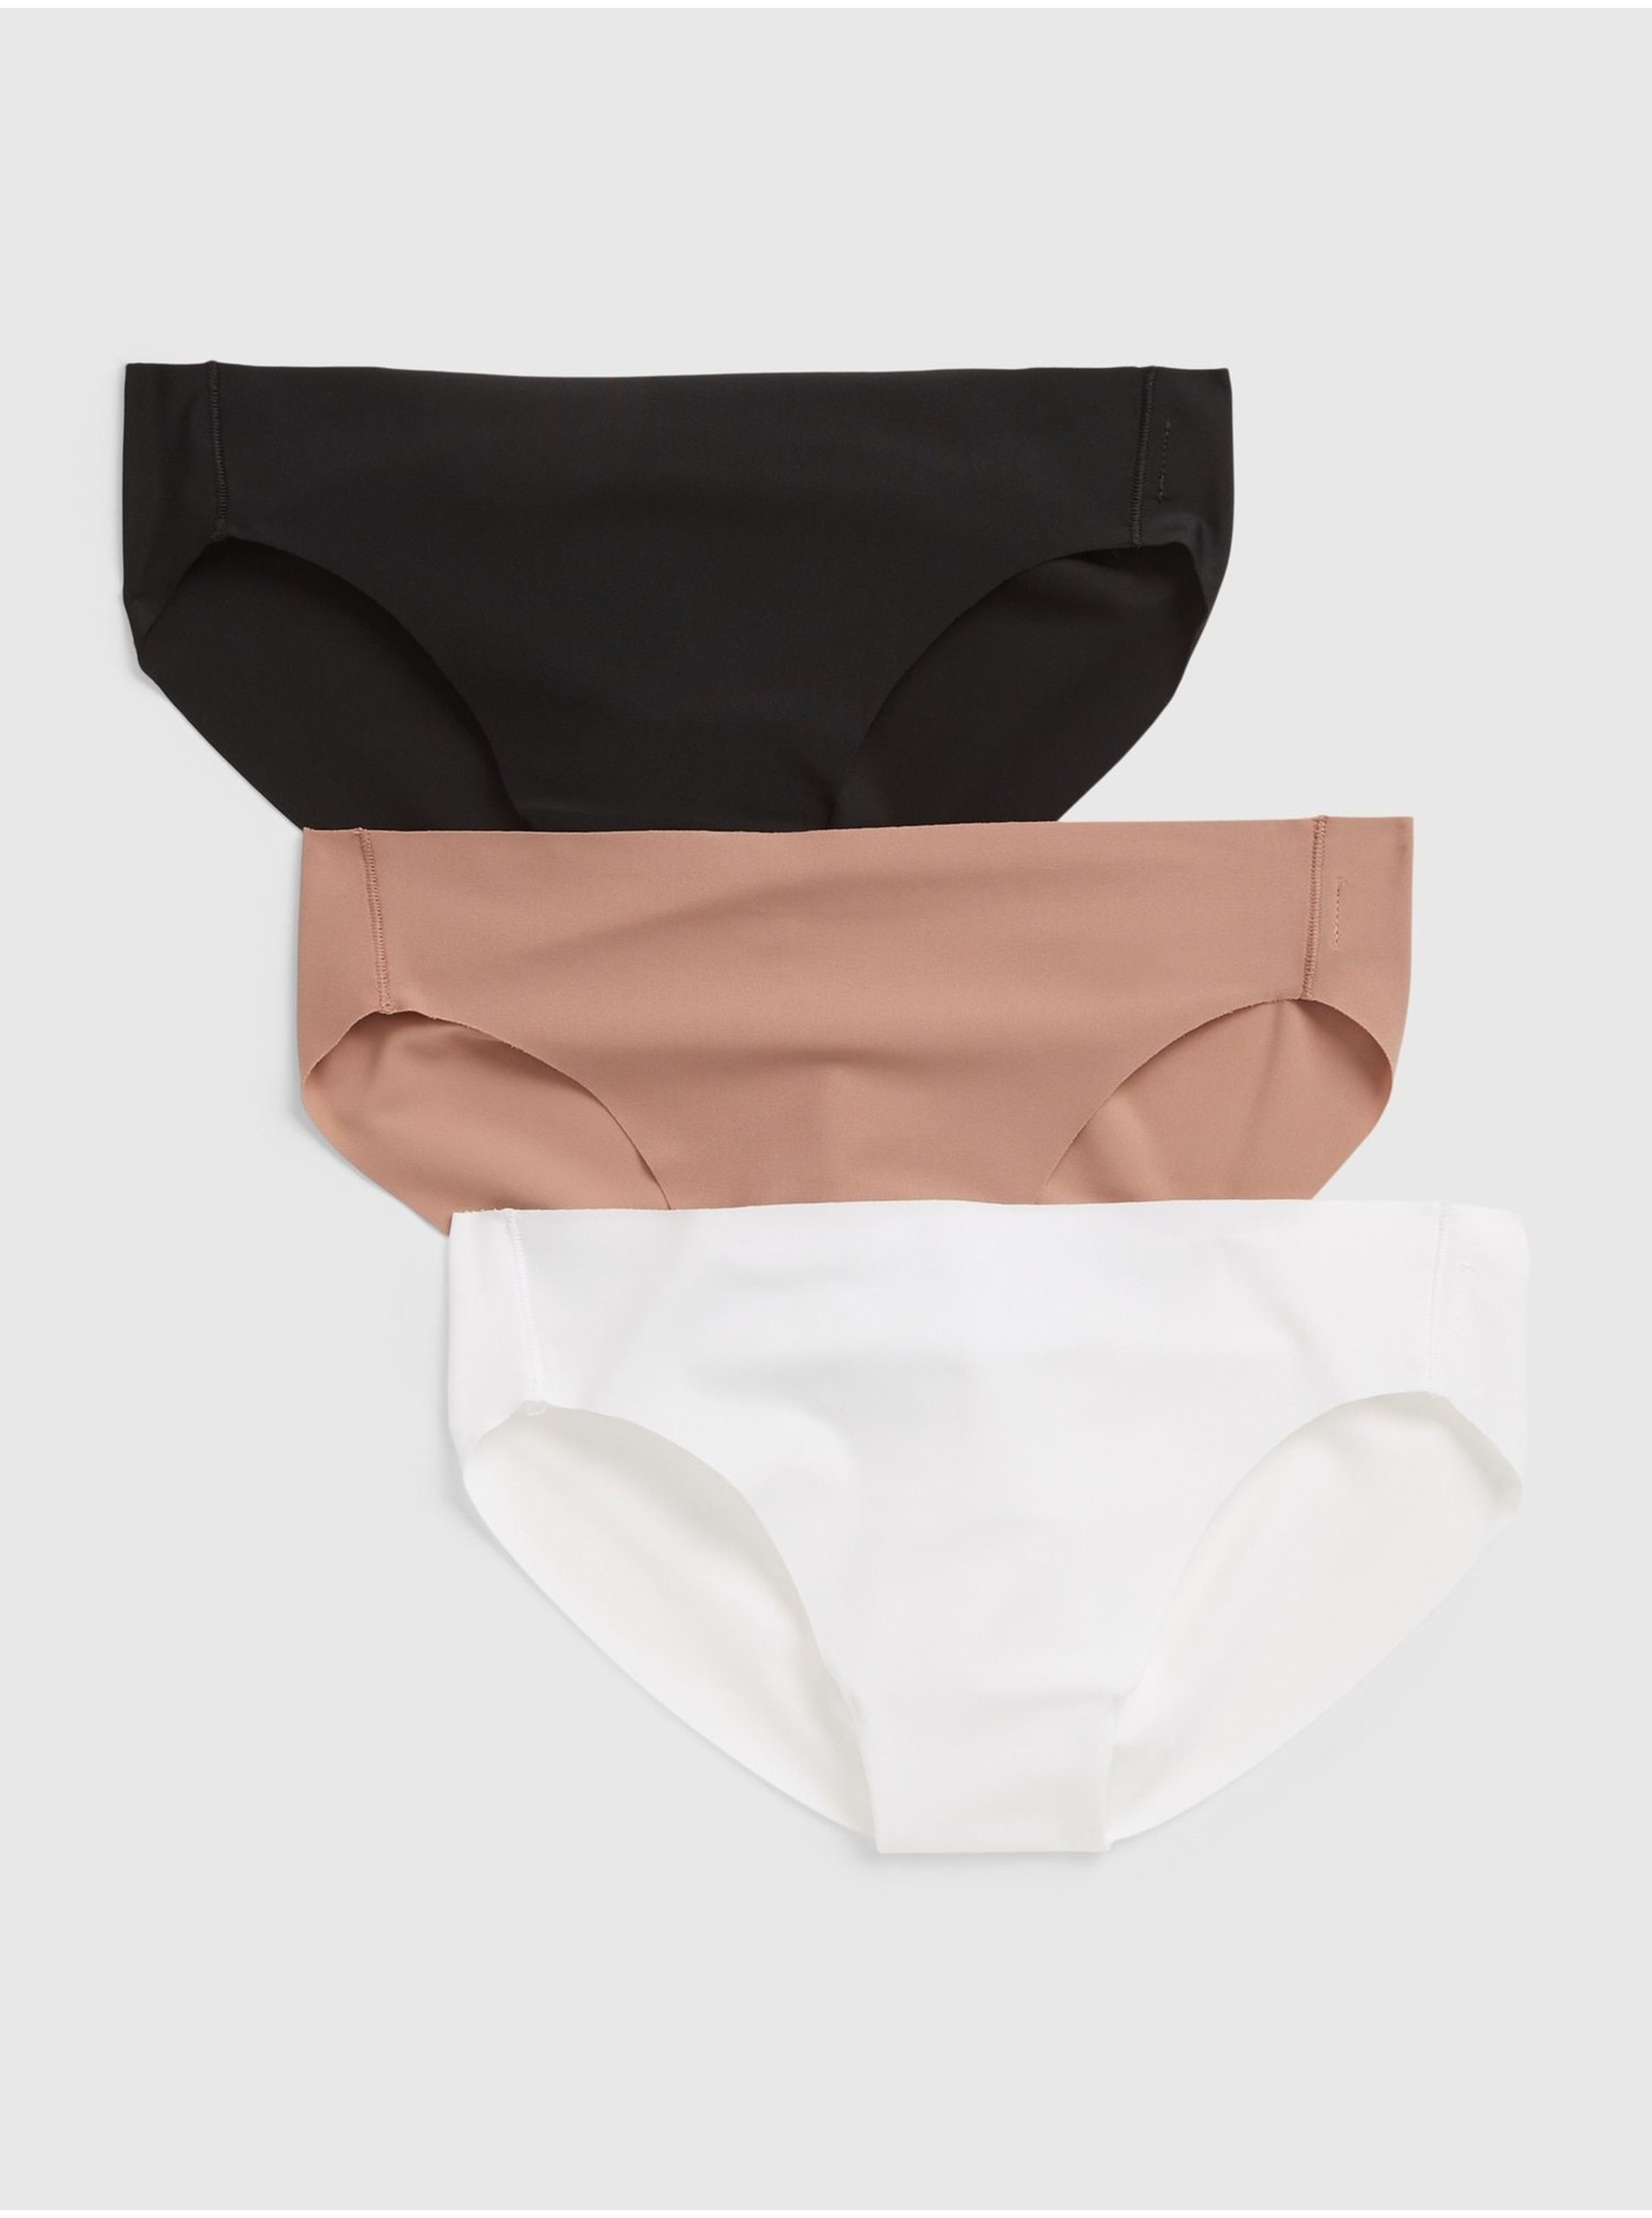 E-shop Barevné dámské kalhotky no-show bikini, 3ks